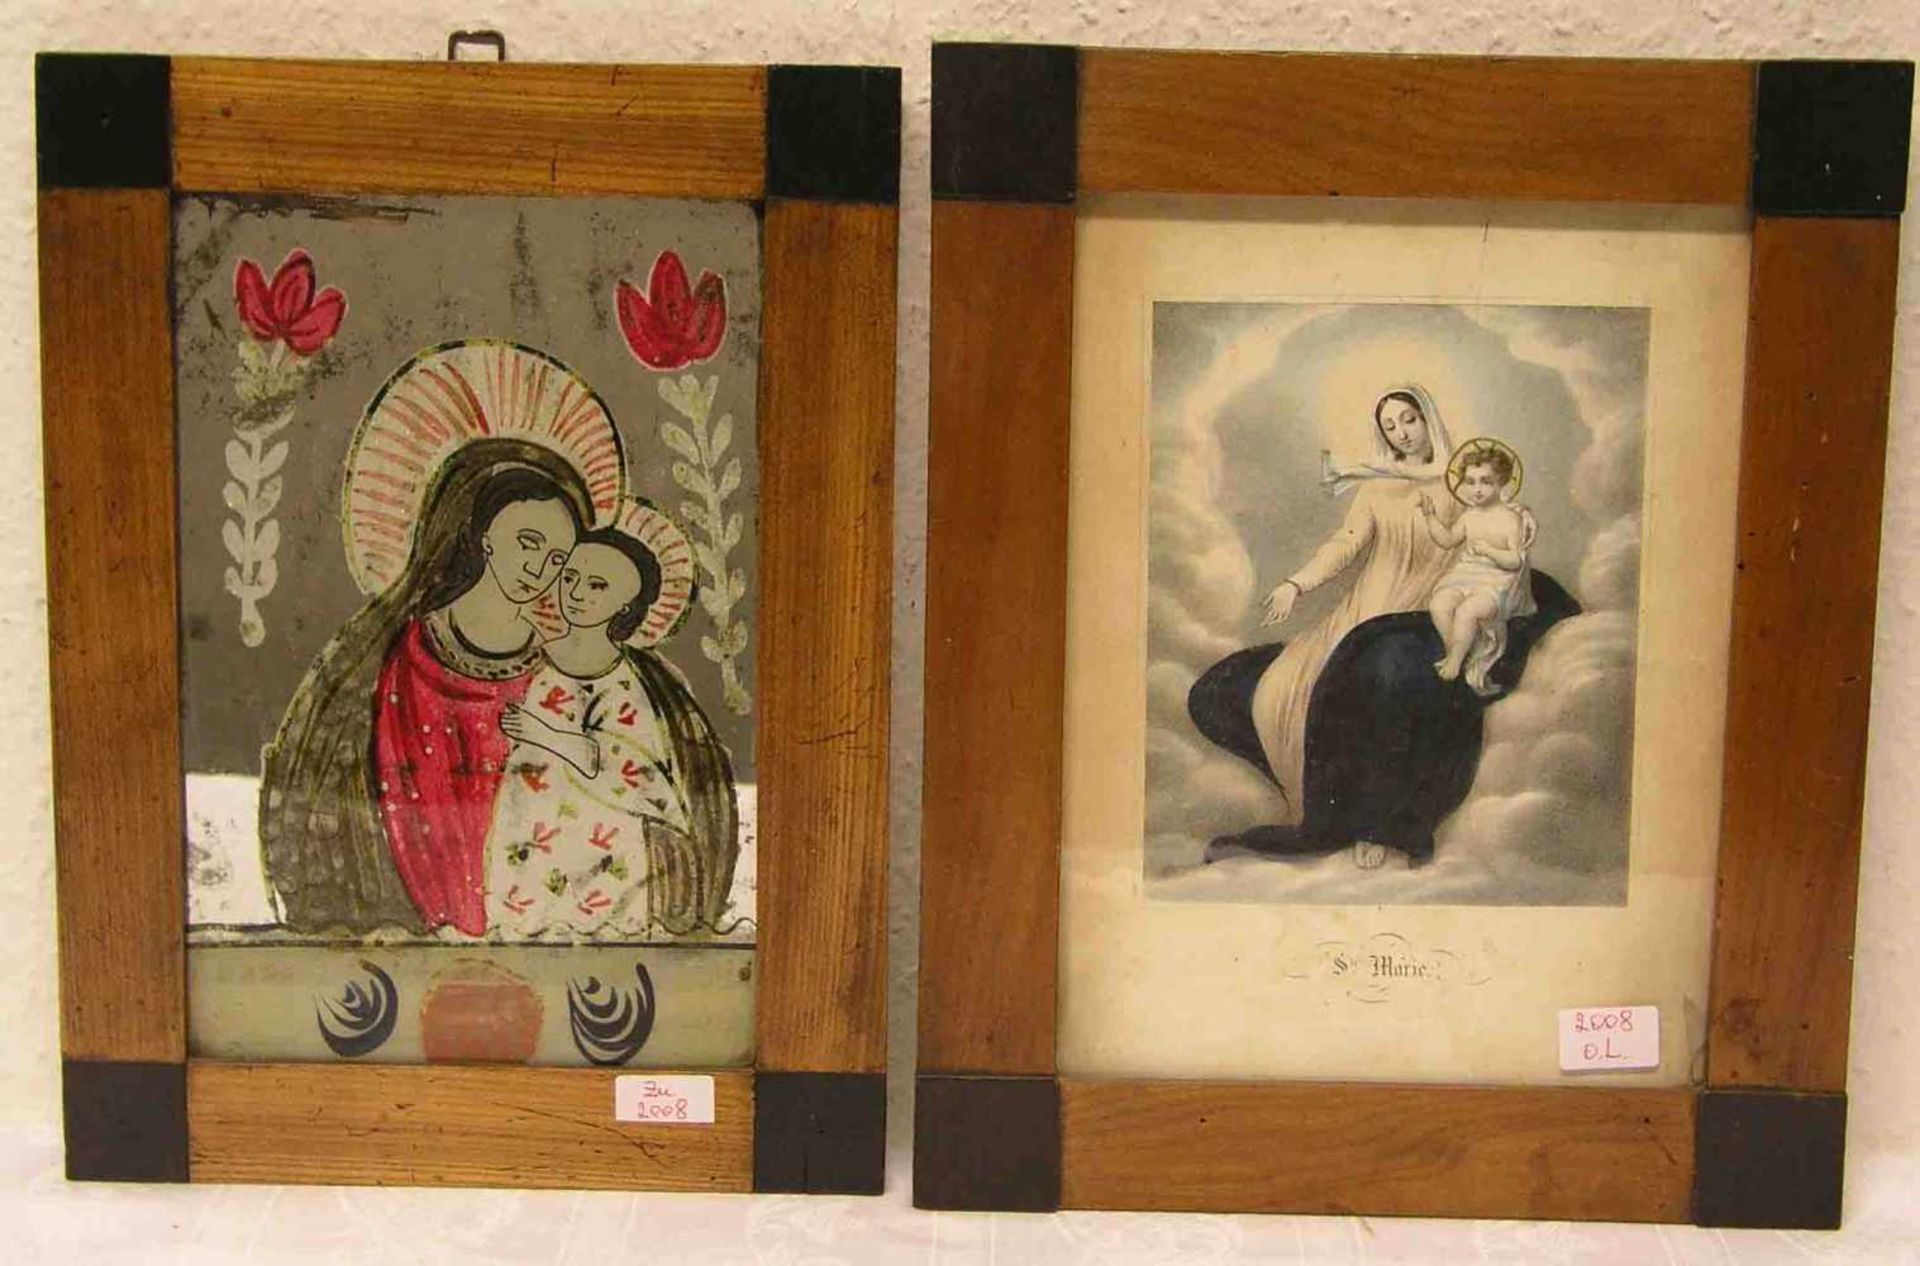 Madonna mit Kind, Nonnenspiegel, 25 x 16cm. Dazu: Madonna mit Kind, Farblithografie, 18 x